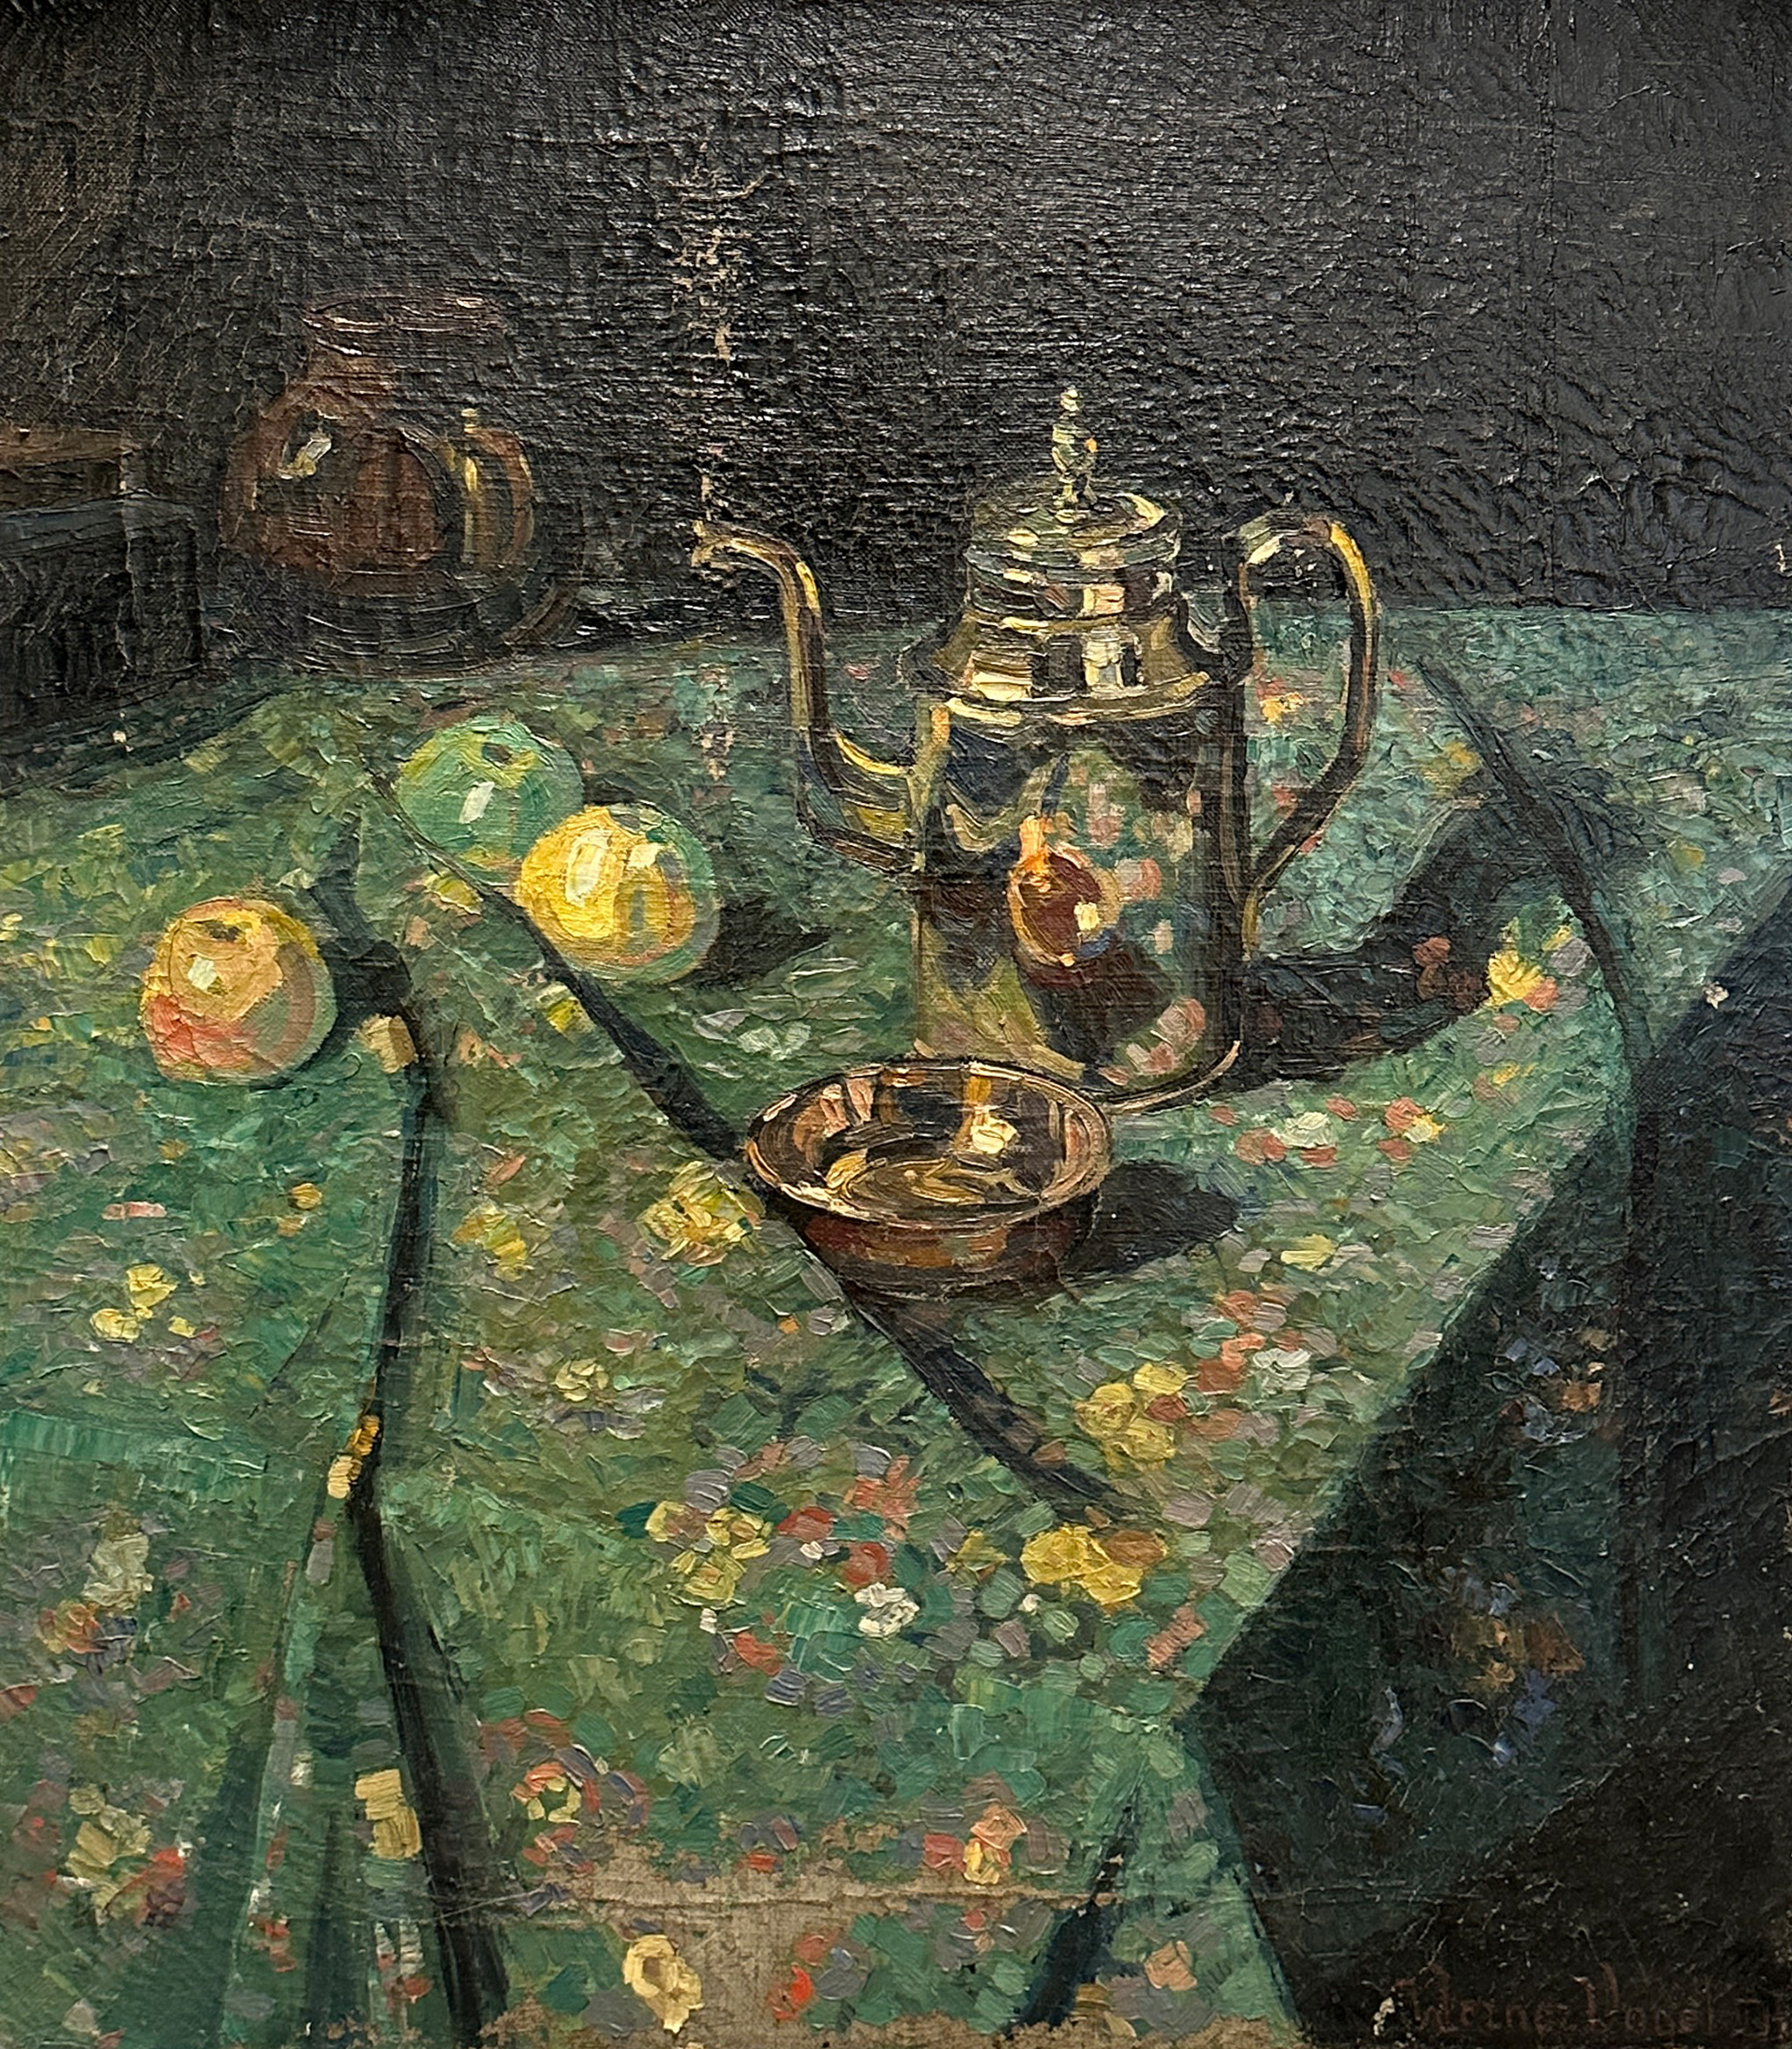 Werner VOGEL (1889 - 1957). Still life with jug and apples.